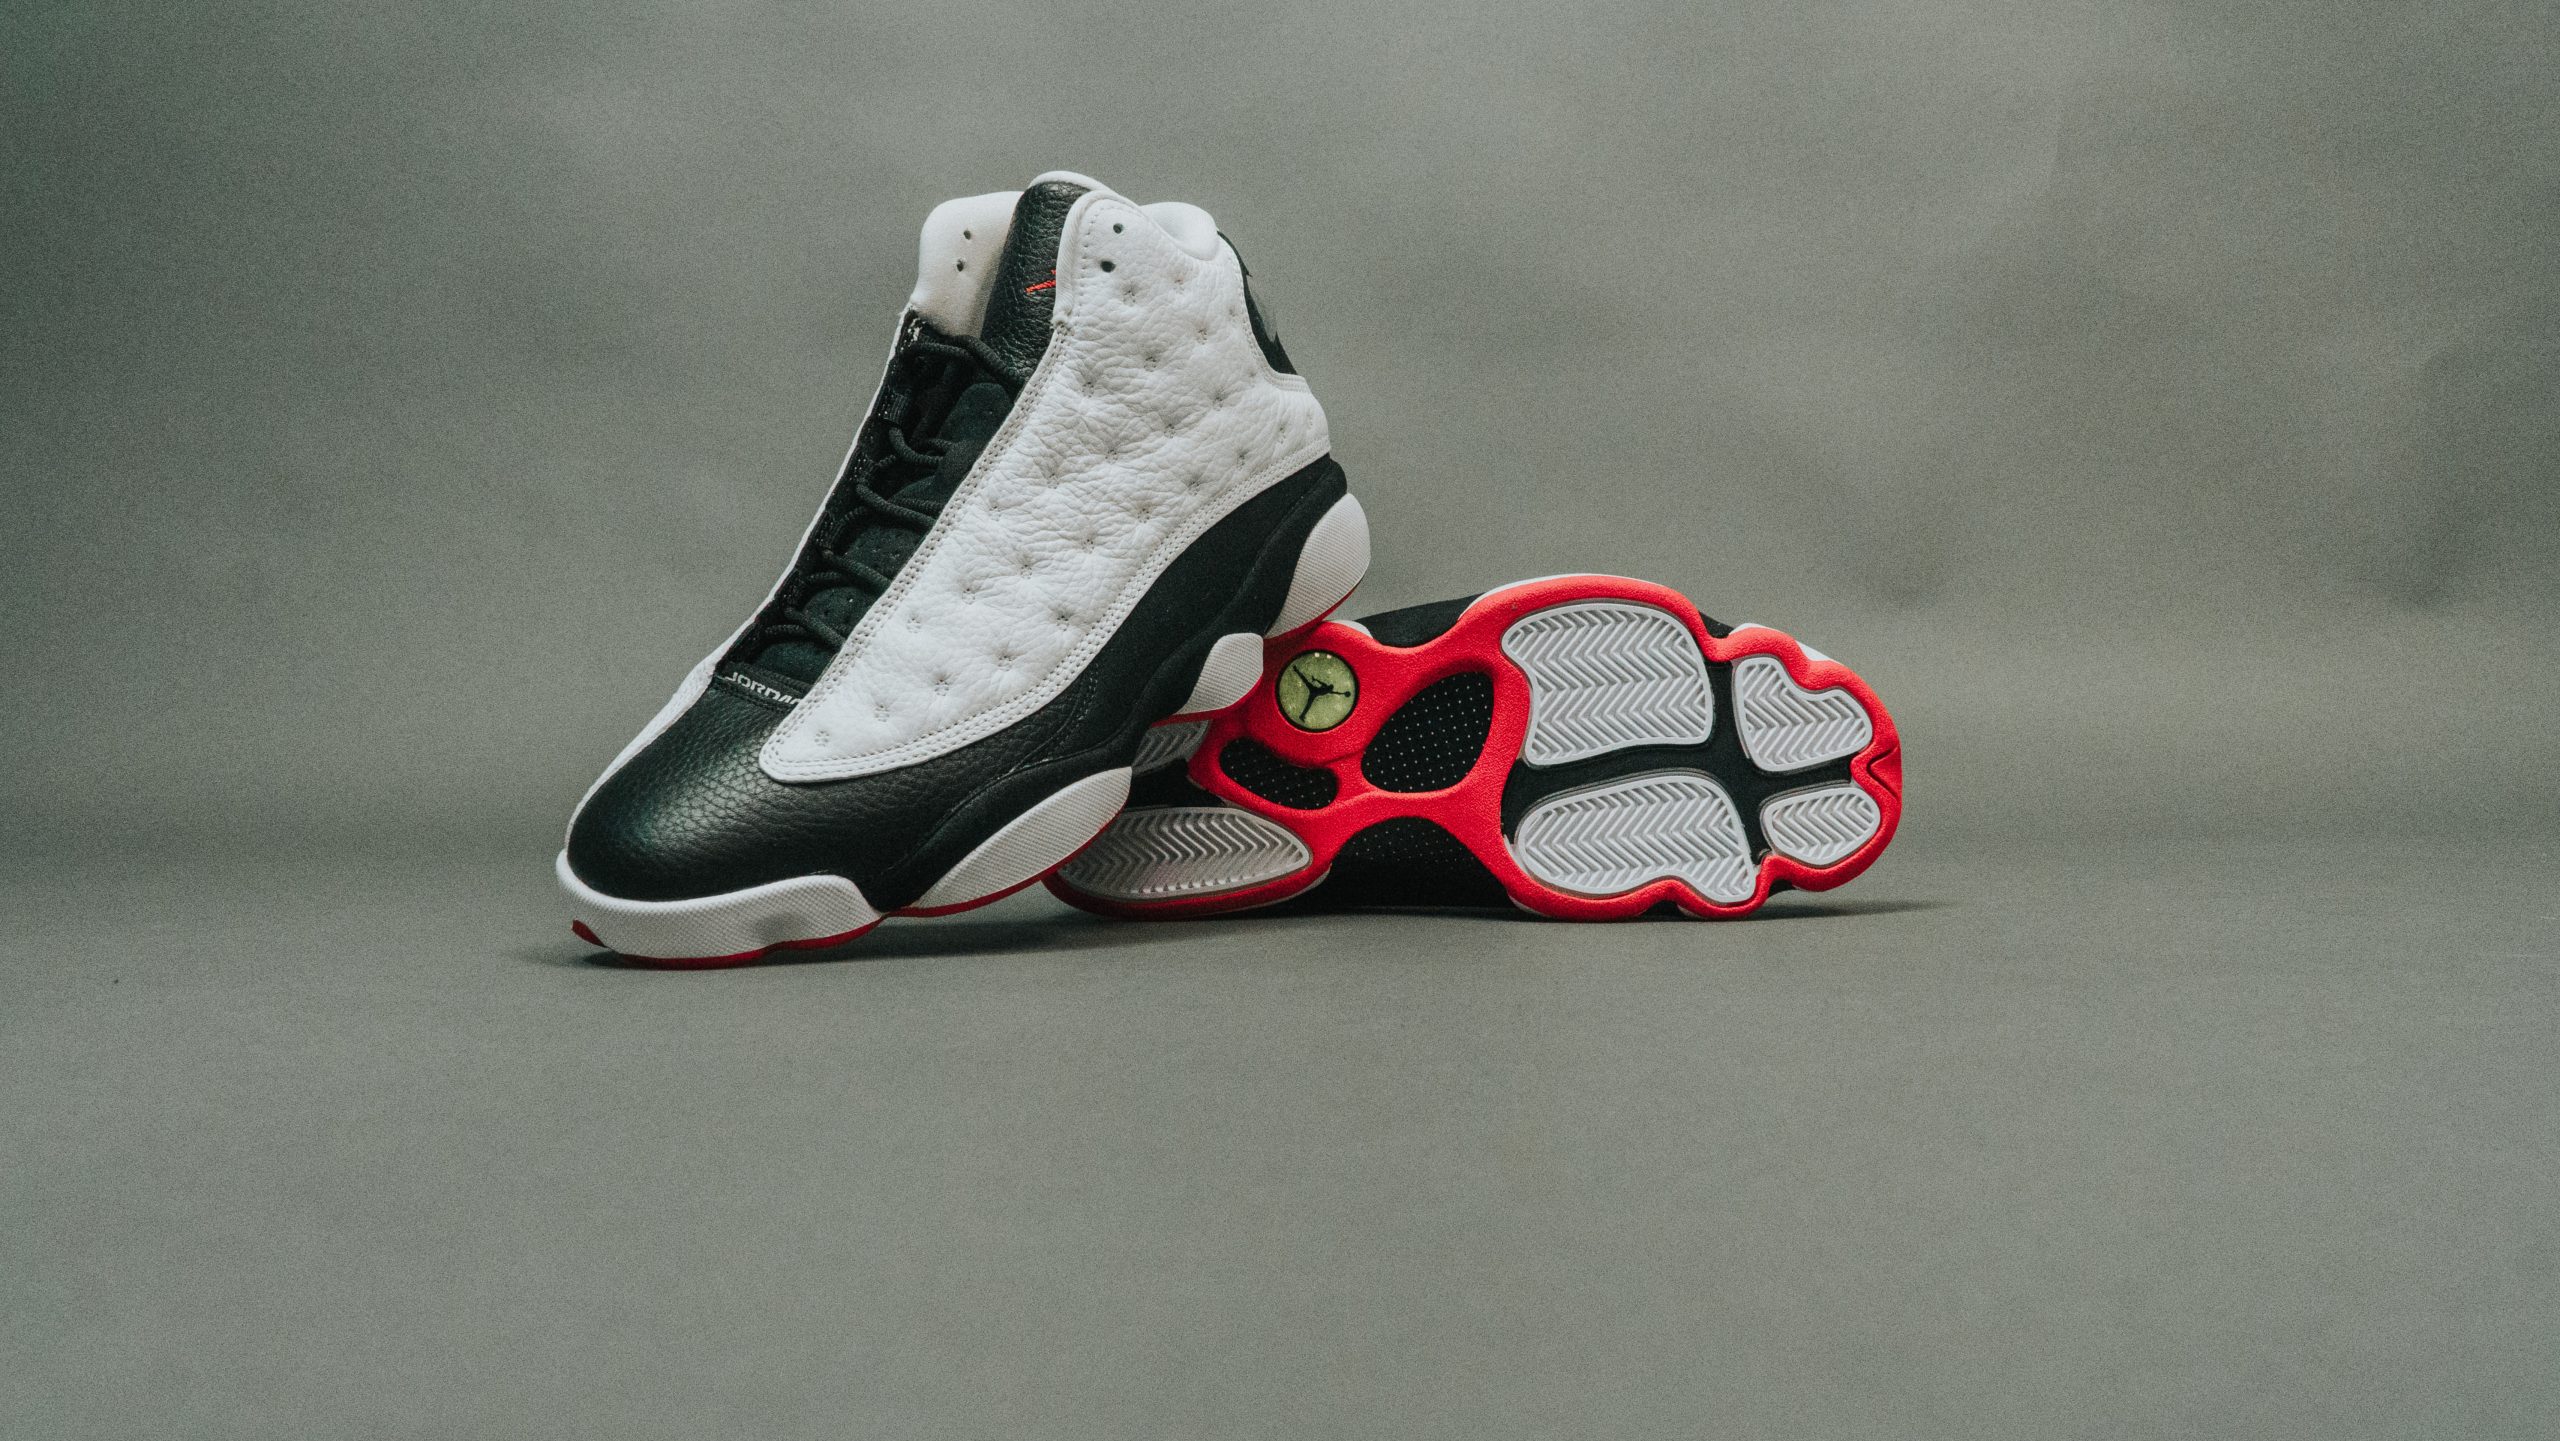 Nike Air Jordan 13 Retro: Classic white/black/red sneaker.